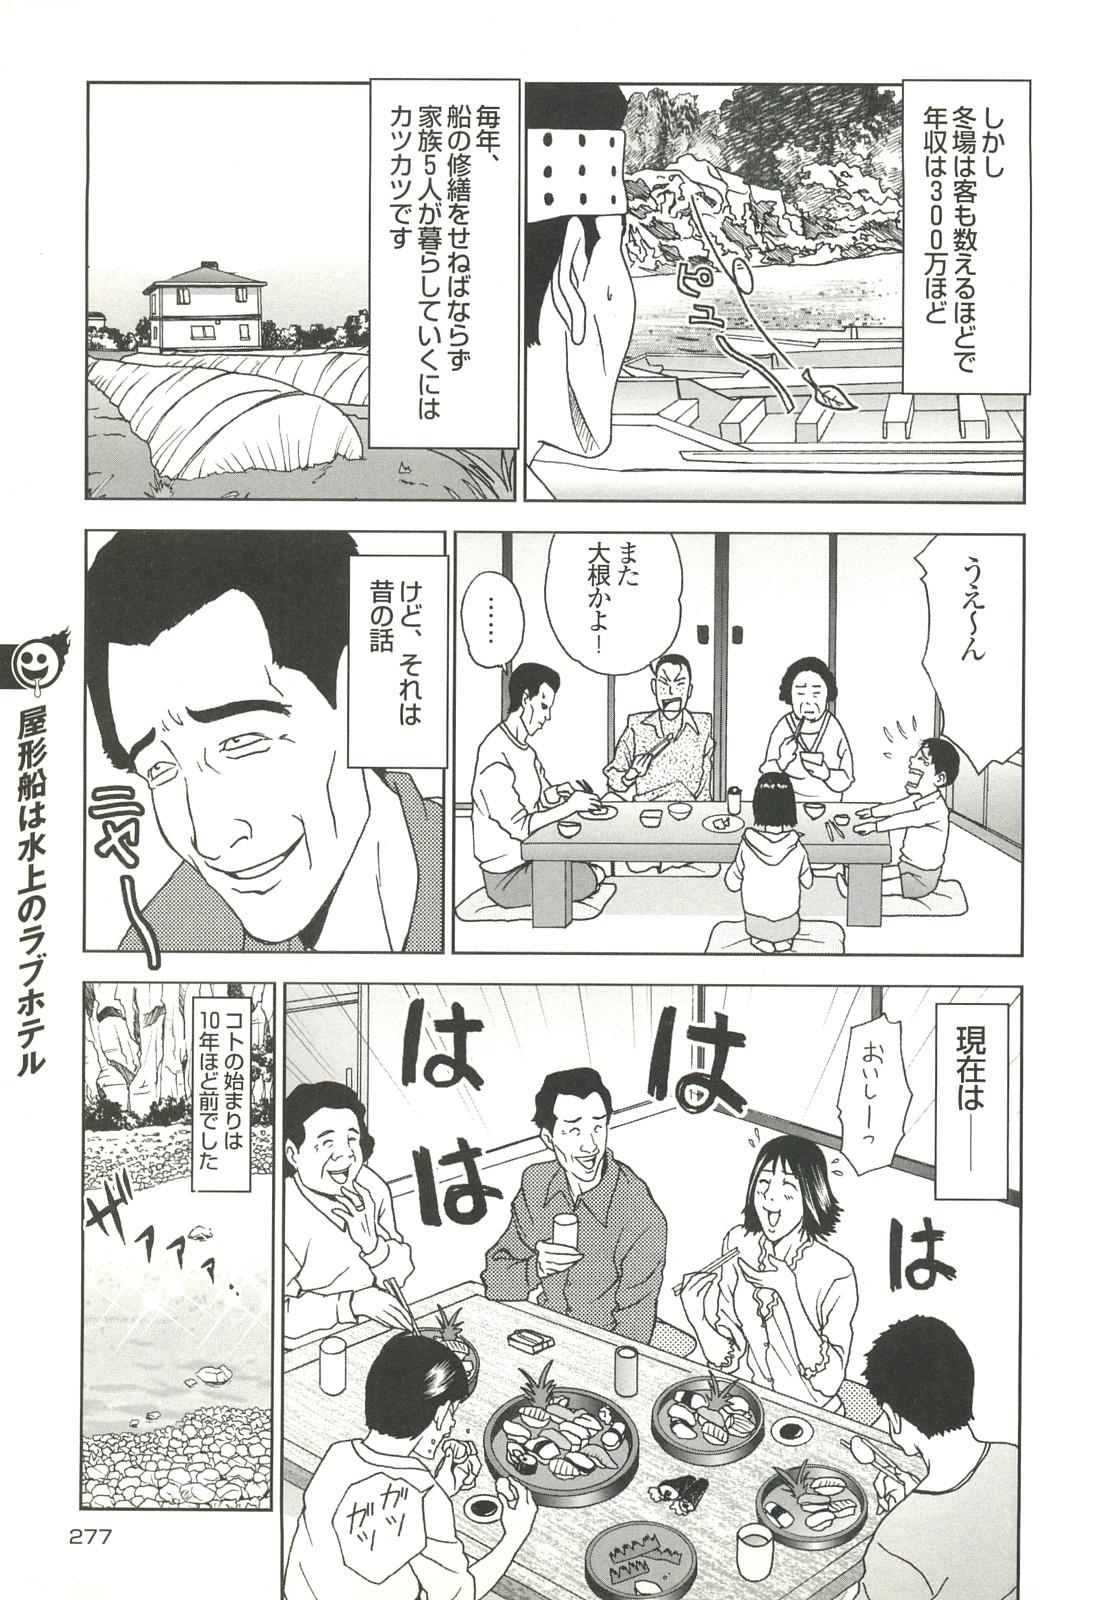 コミック裏モノJAPAN Vol.18 今井のりたつスペシャル号 276